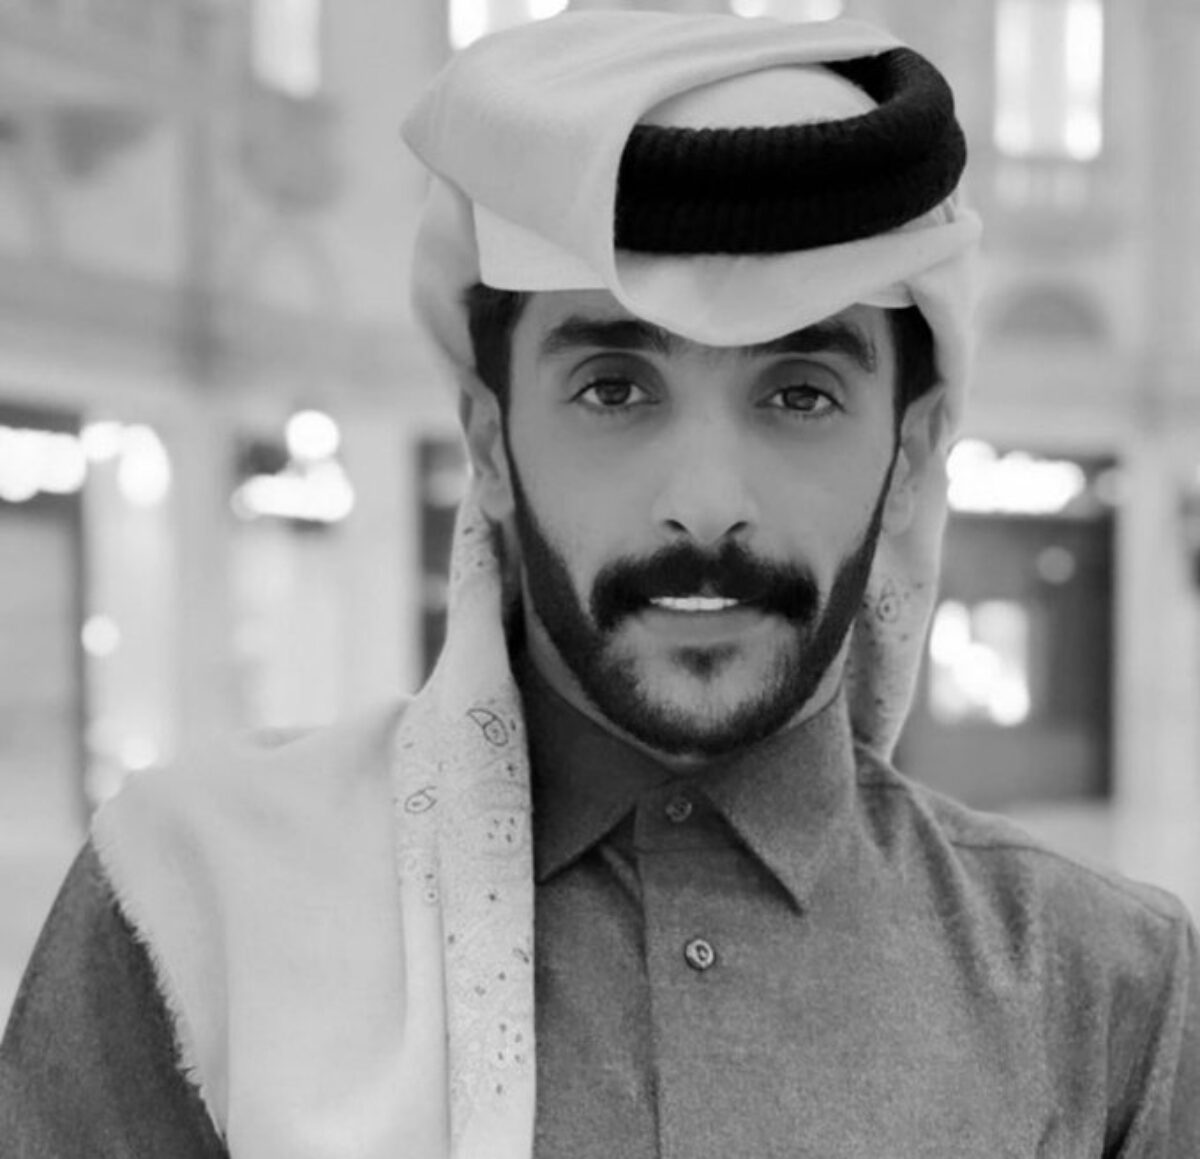 من هو الشاب القطري الذي اشعلت وفاته مواقع التواصل! | وطن يغرد خارج السرب